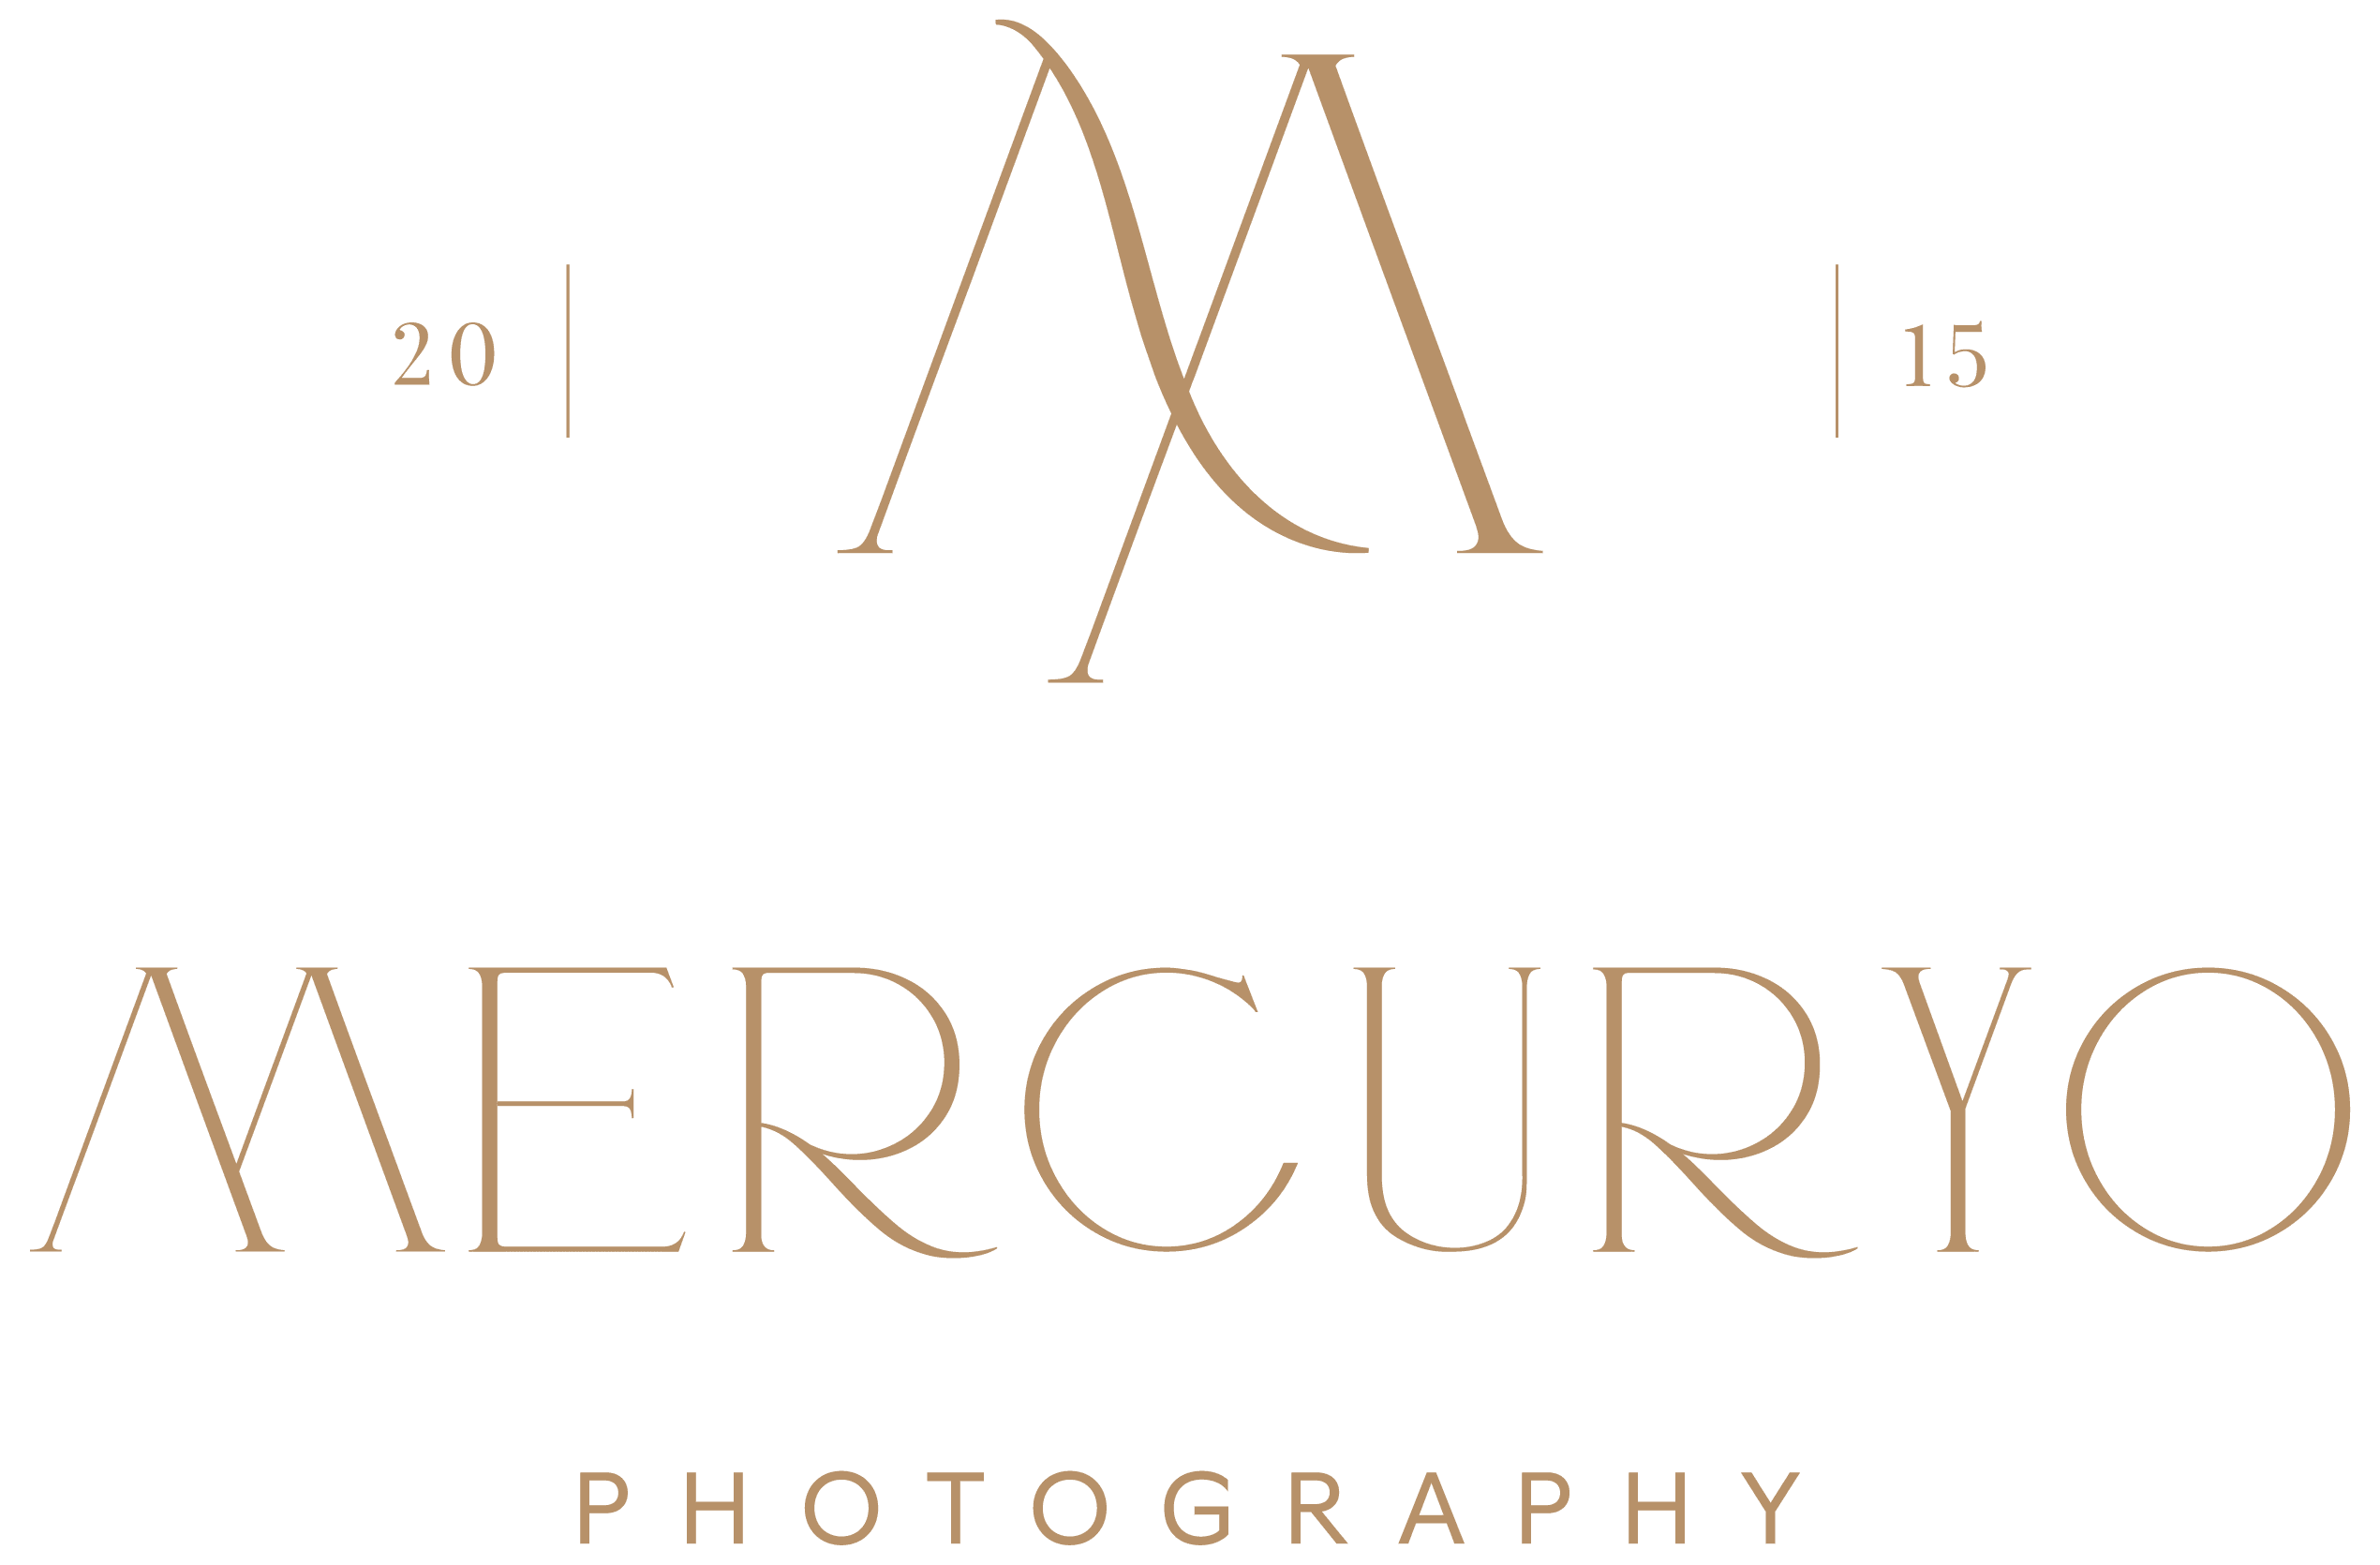 Mercuryo Photography